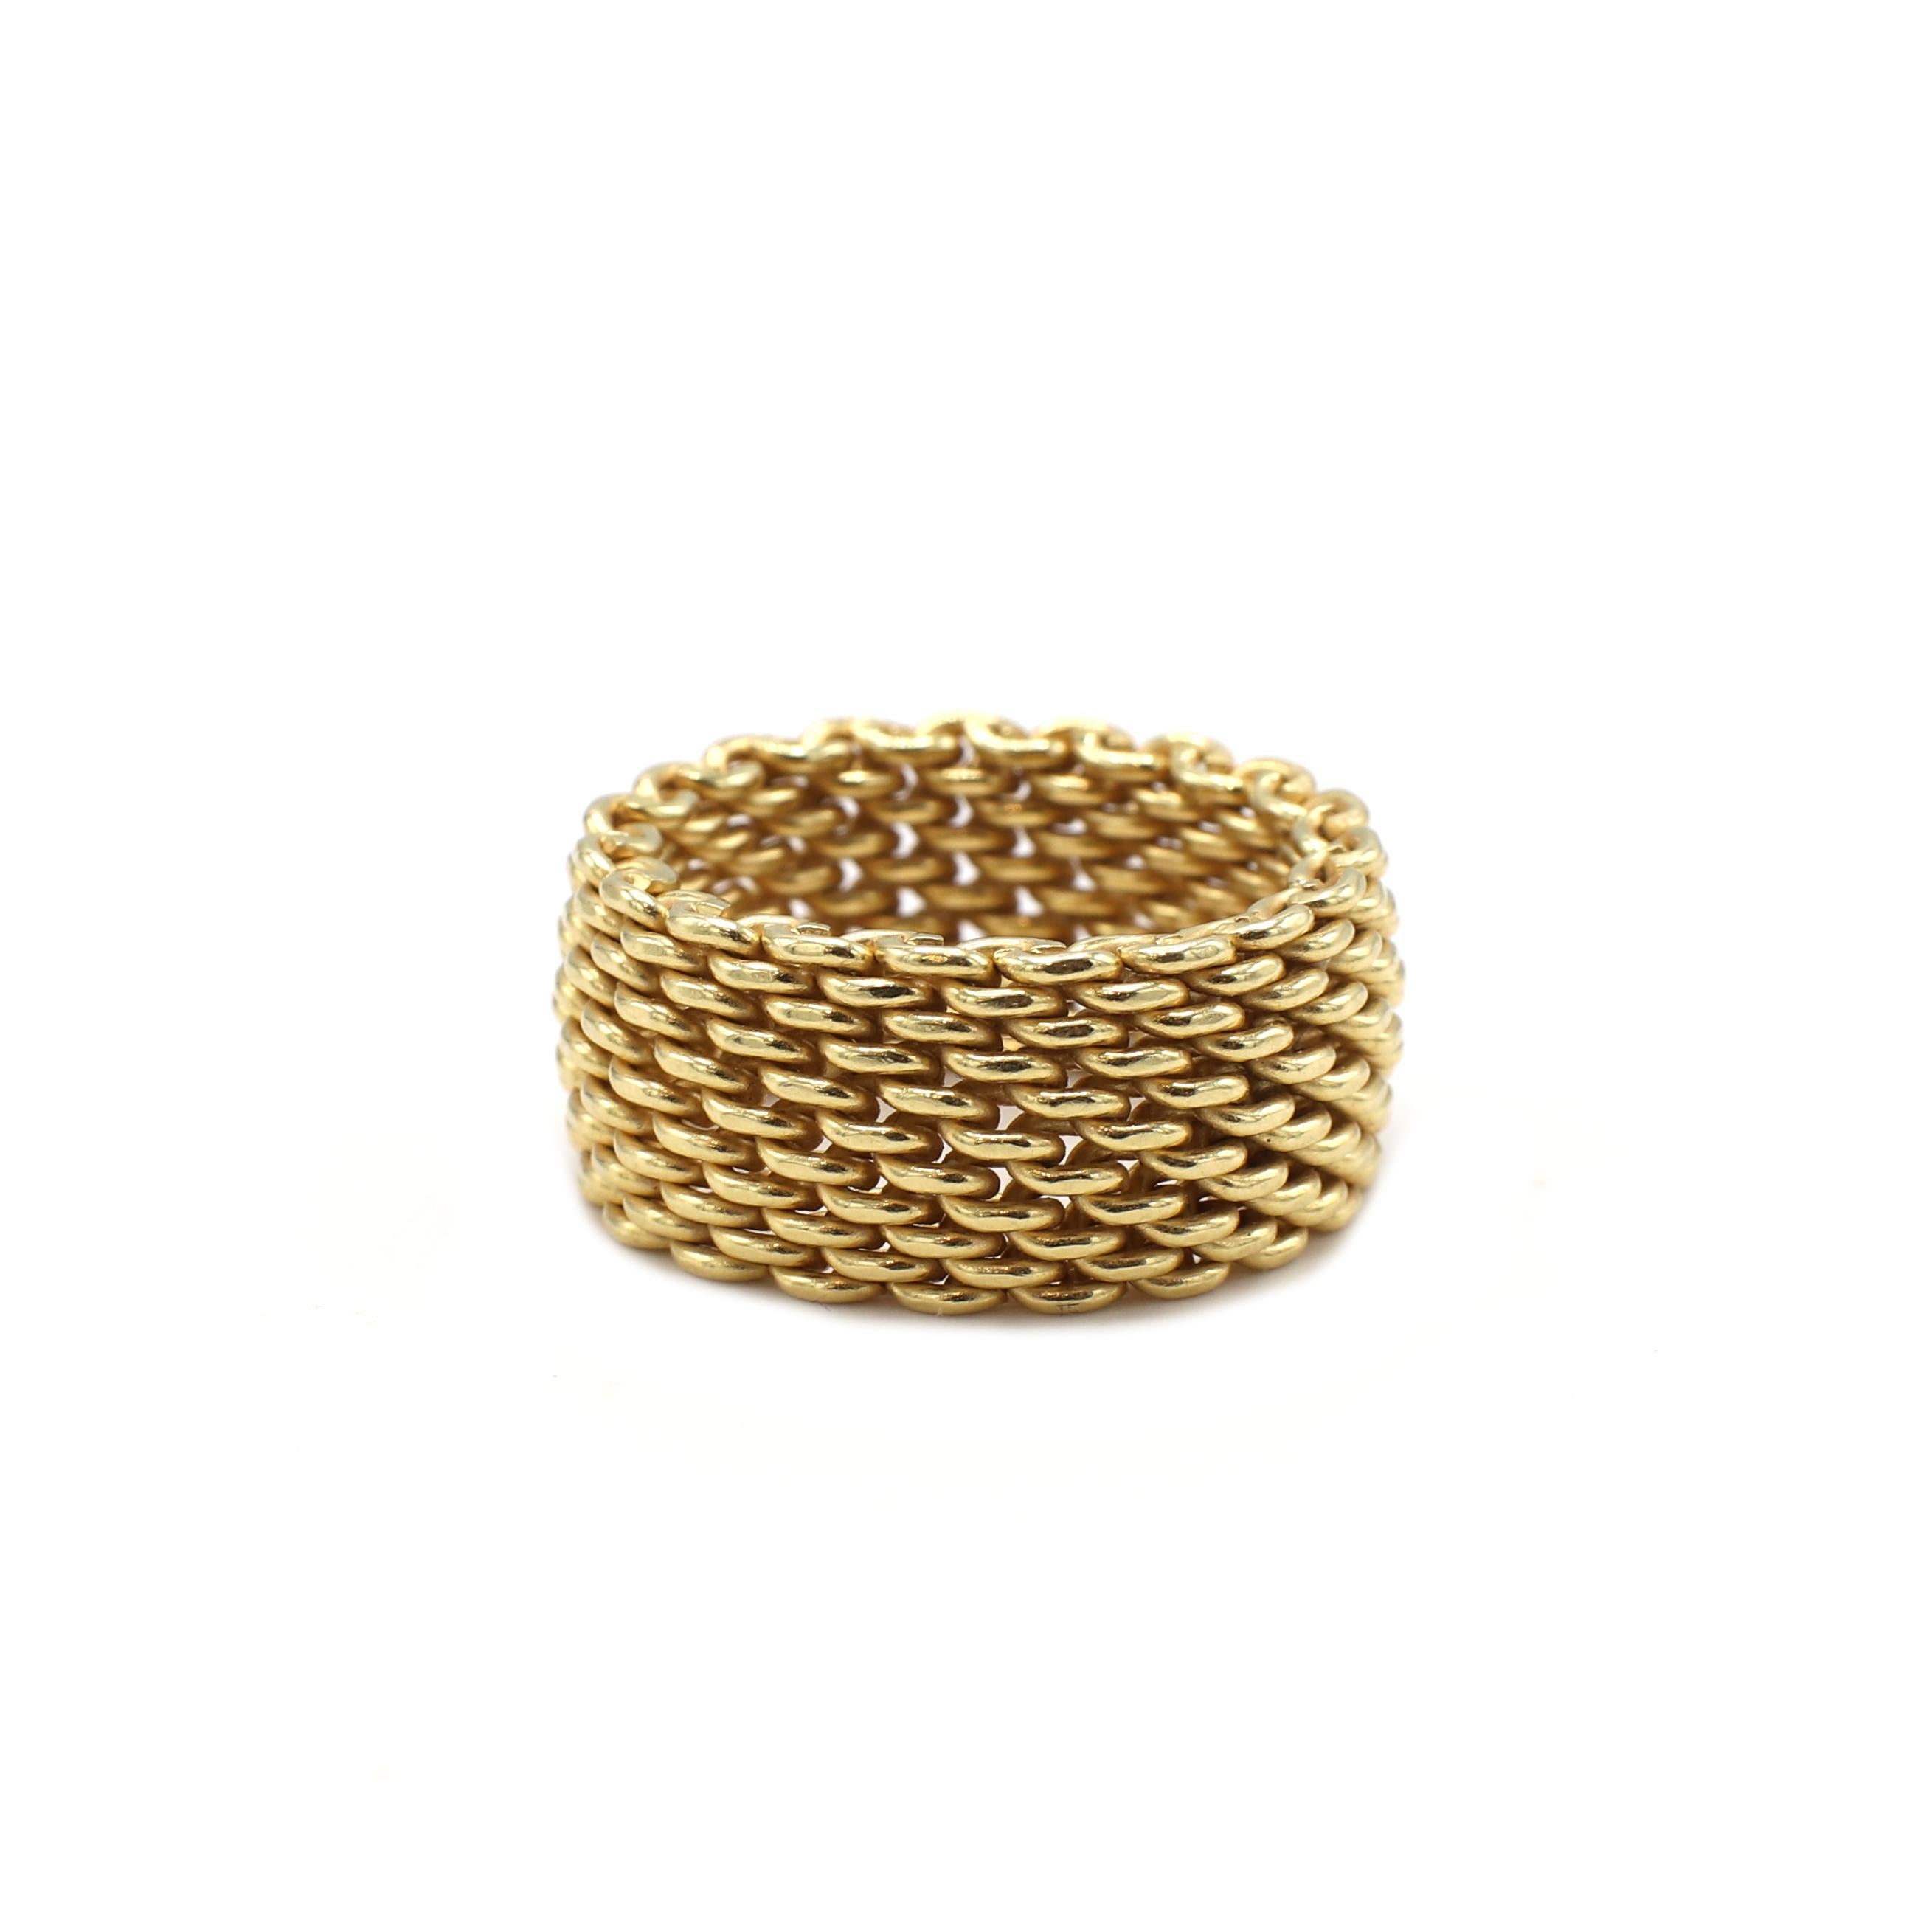 Tiffany & Co. Somerset 18 Karat Yellow Gold Mesh Wide Band Ring 
Metal: 18 karat yellow gold
Weight: 12.47 grams
Width: 10mm
Size: 7.5 (US)
